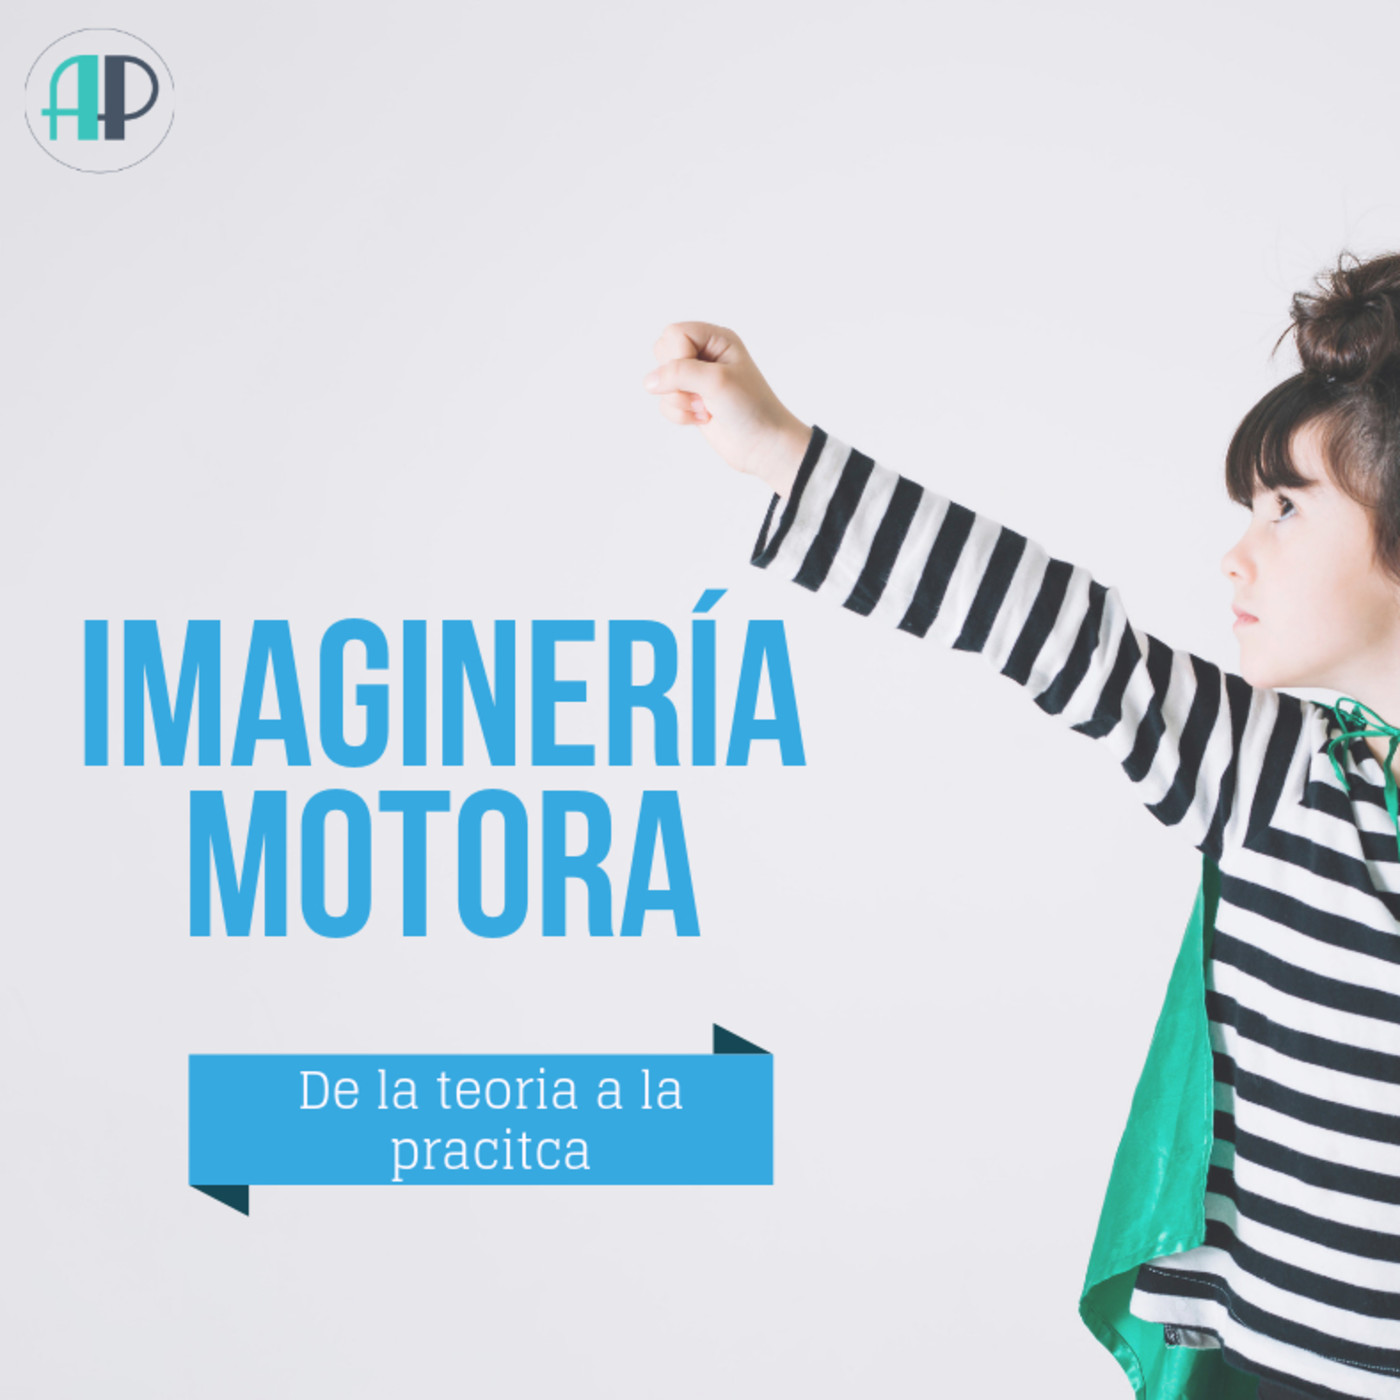 Imaginería Motora - Audiopost 5